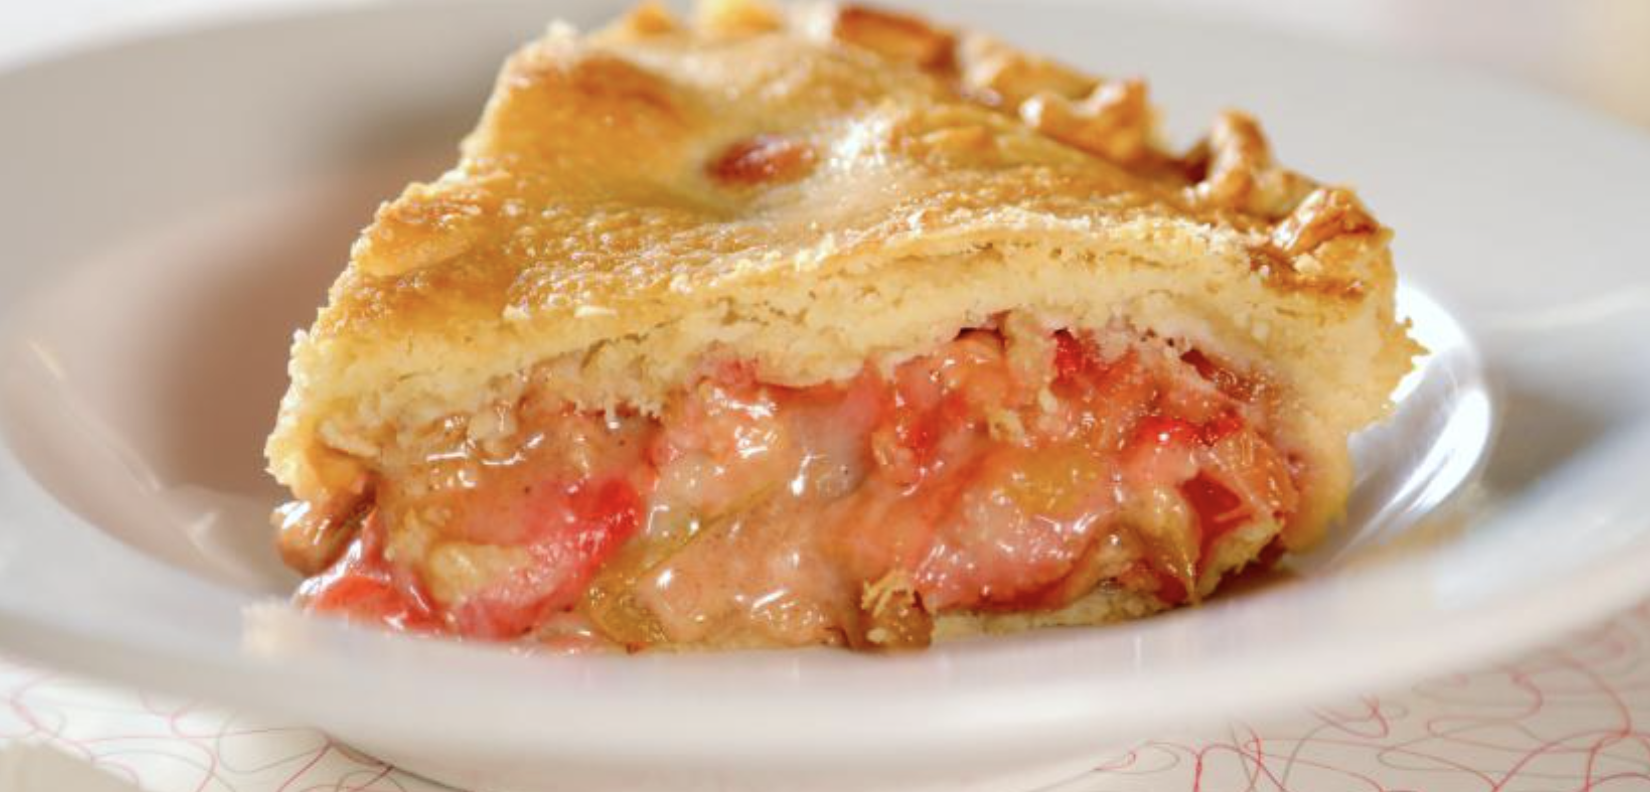 Strawberry Rhubarb Pie @ 3:39